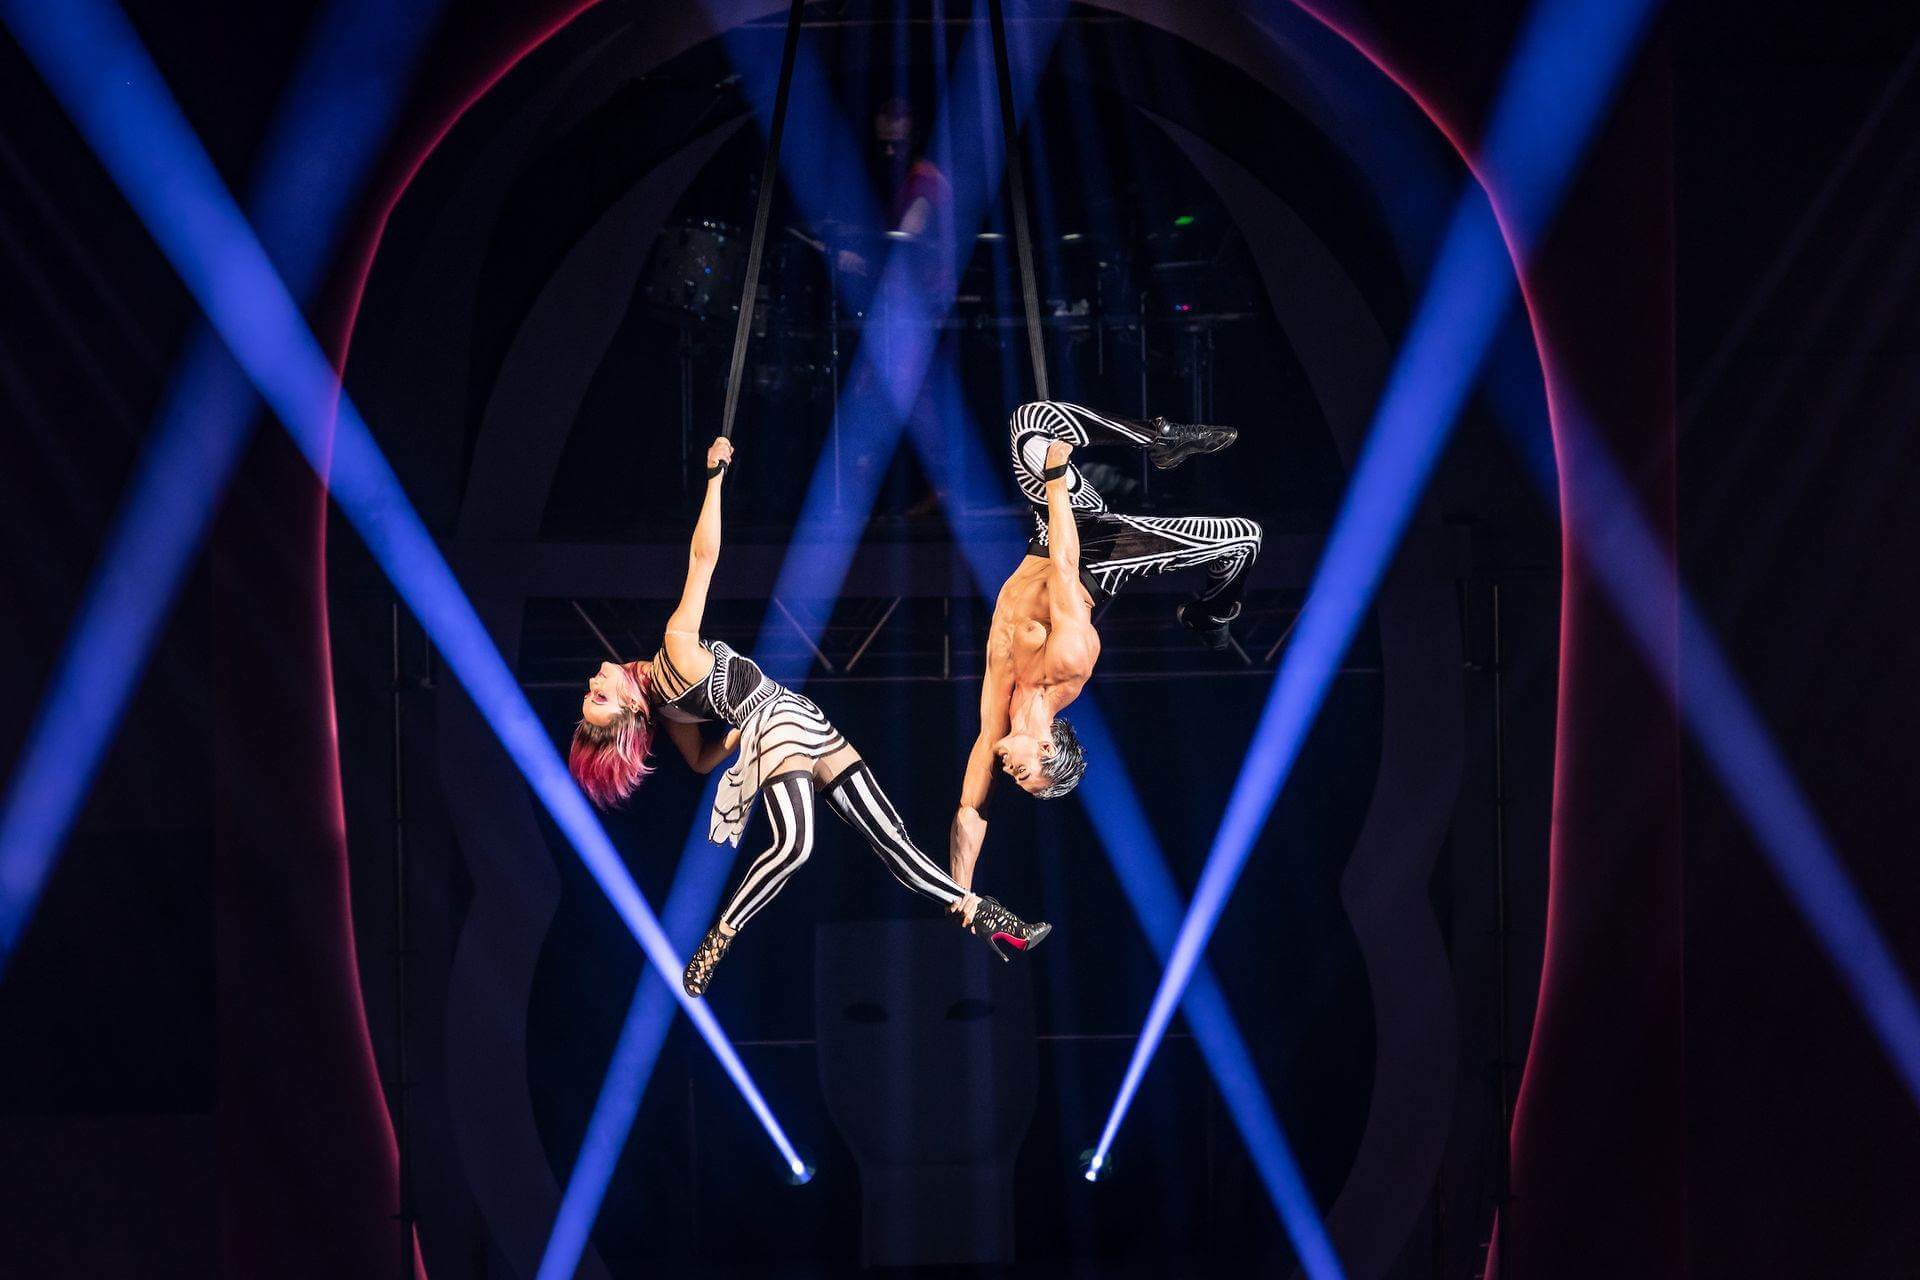 Diva by Cirque du Soleil 2018: Vertical dance duet